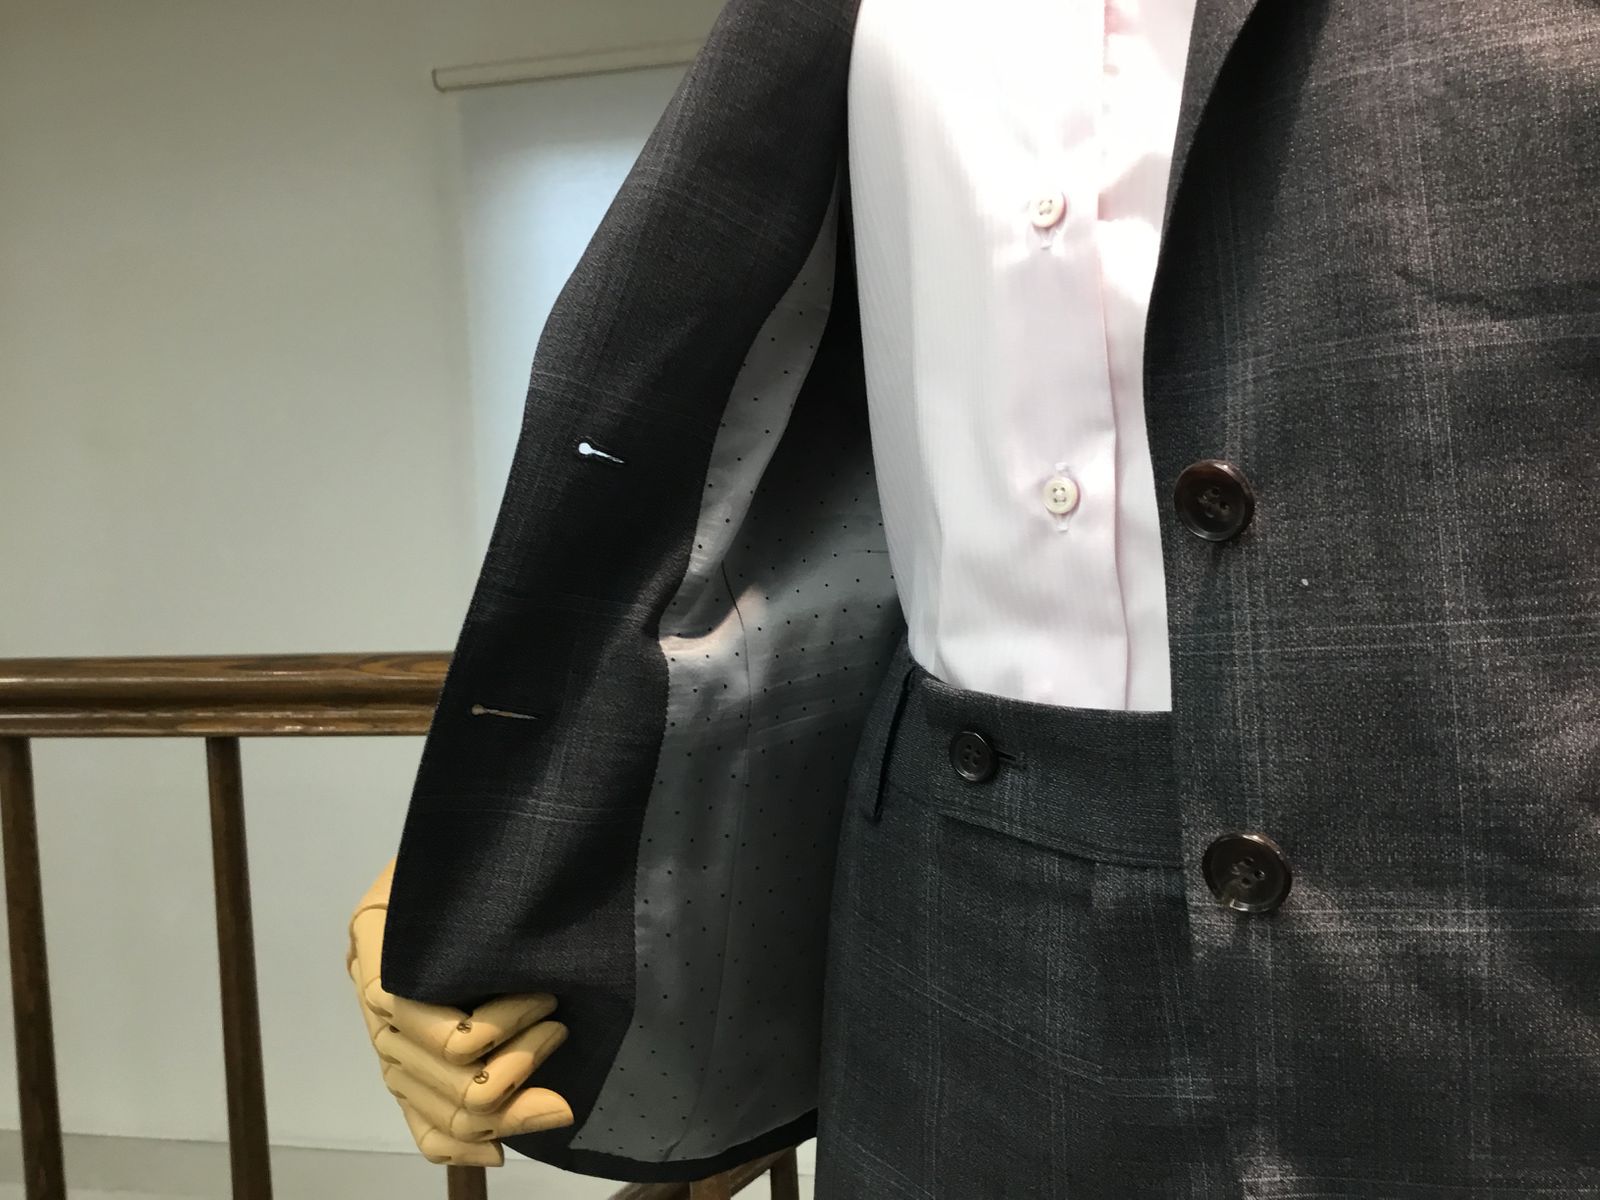 レディースオーダーチェックスーツ | オーダースーツは完全国内縫製のHANABISHI(ハナビシ)